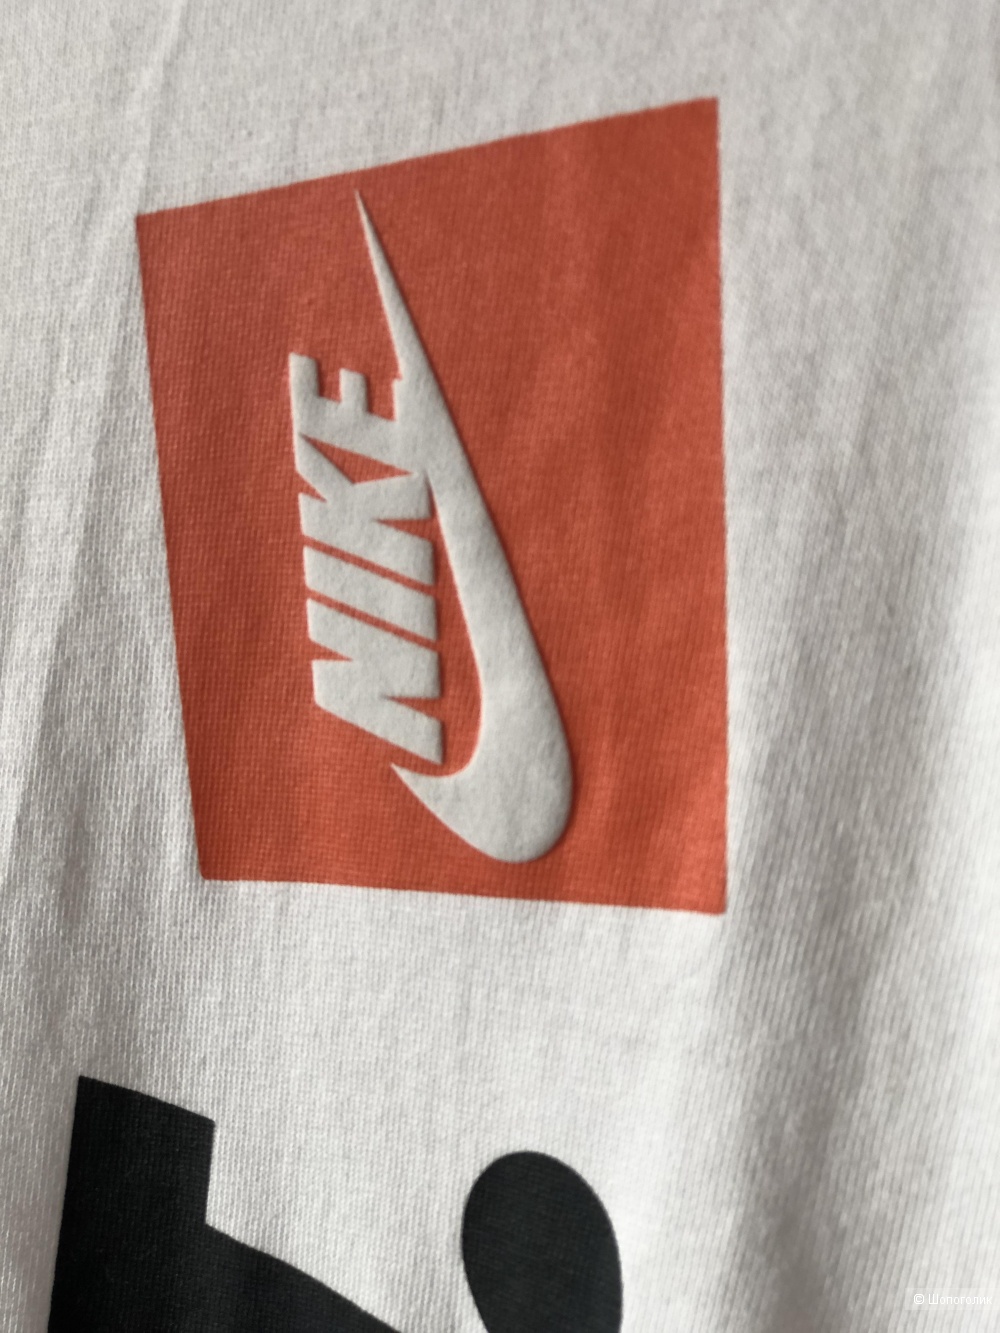 Мужская футболка Nike Just Do It, L/XL